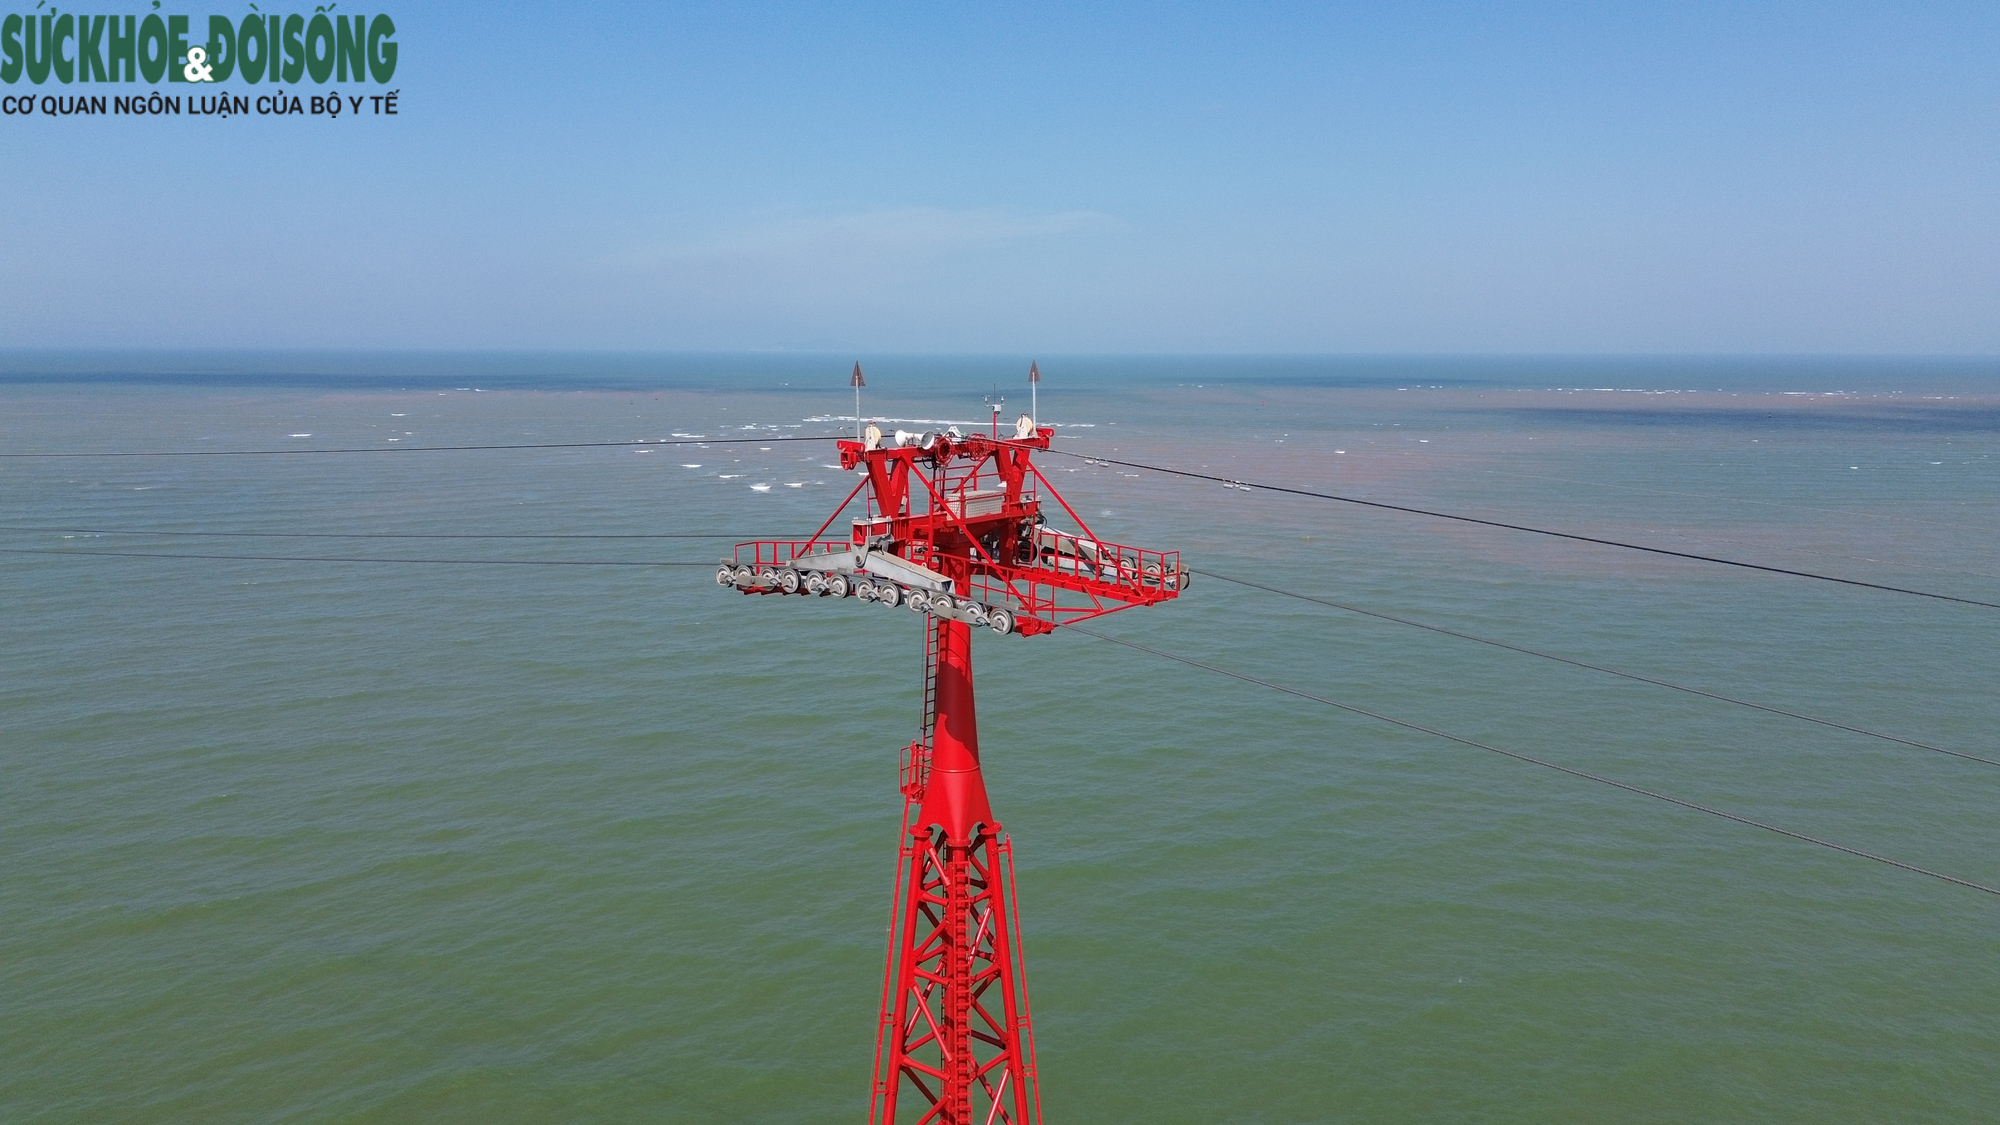 Ngắm nhìn toàn cảnh cáp treo vượt biển dài nhất Bắc Trung Bộ - Ảnh 6.